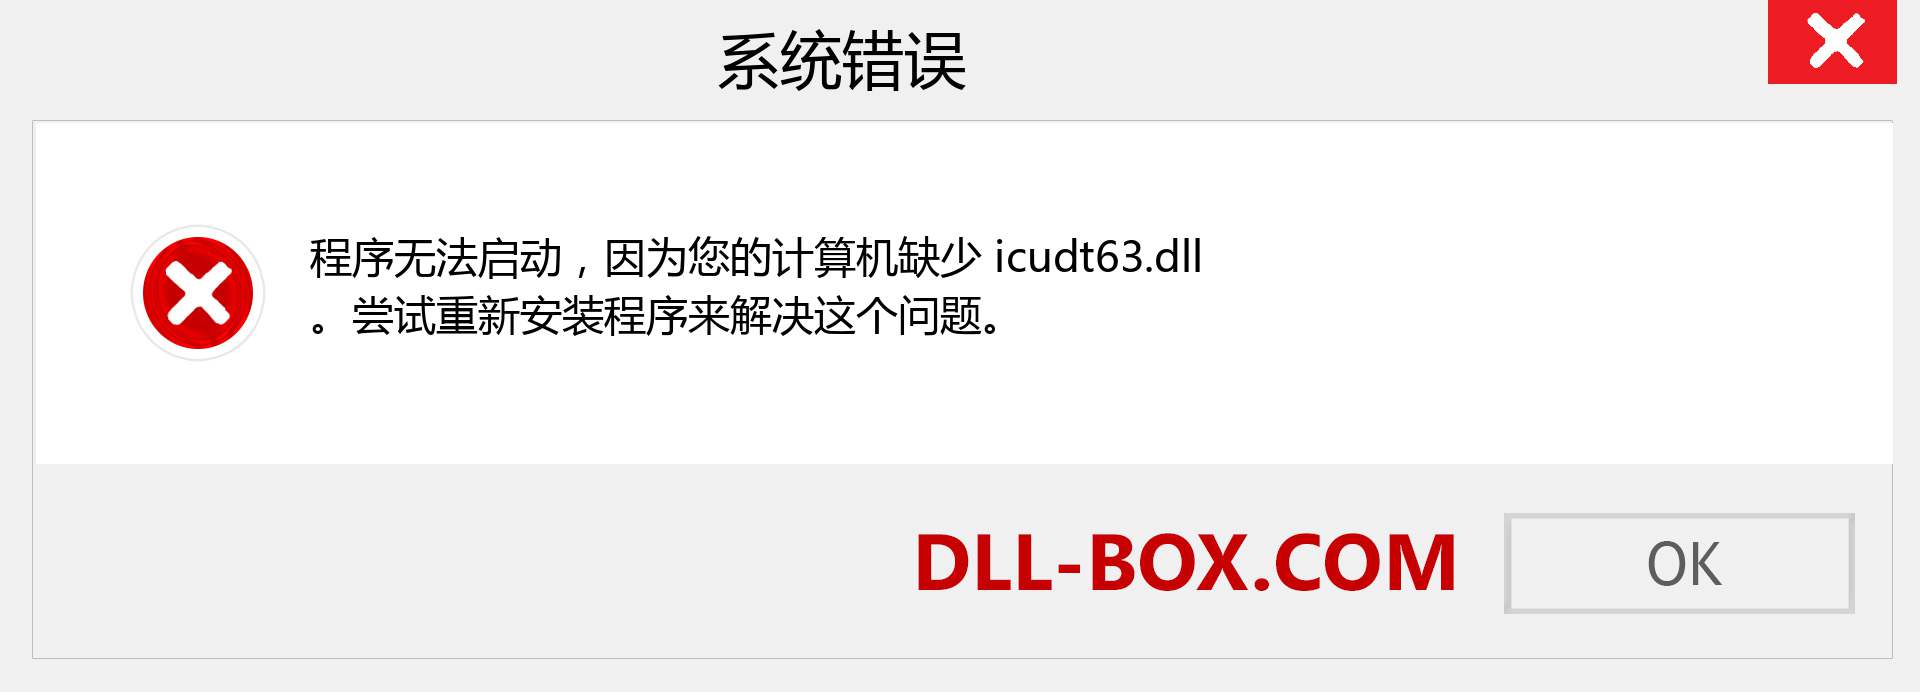 icudt63.dll 文件丢失？。 适用于 Windows 7、8、10 的下载 - 修复 Windows、照片、图像上的 icudt63 dll 丢失错误